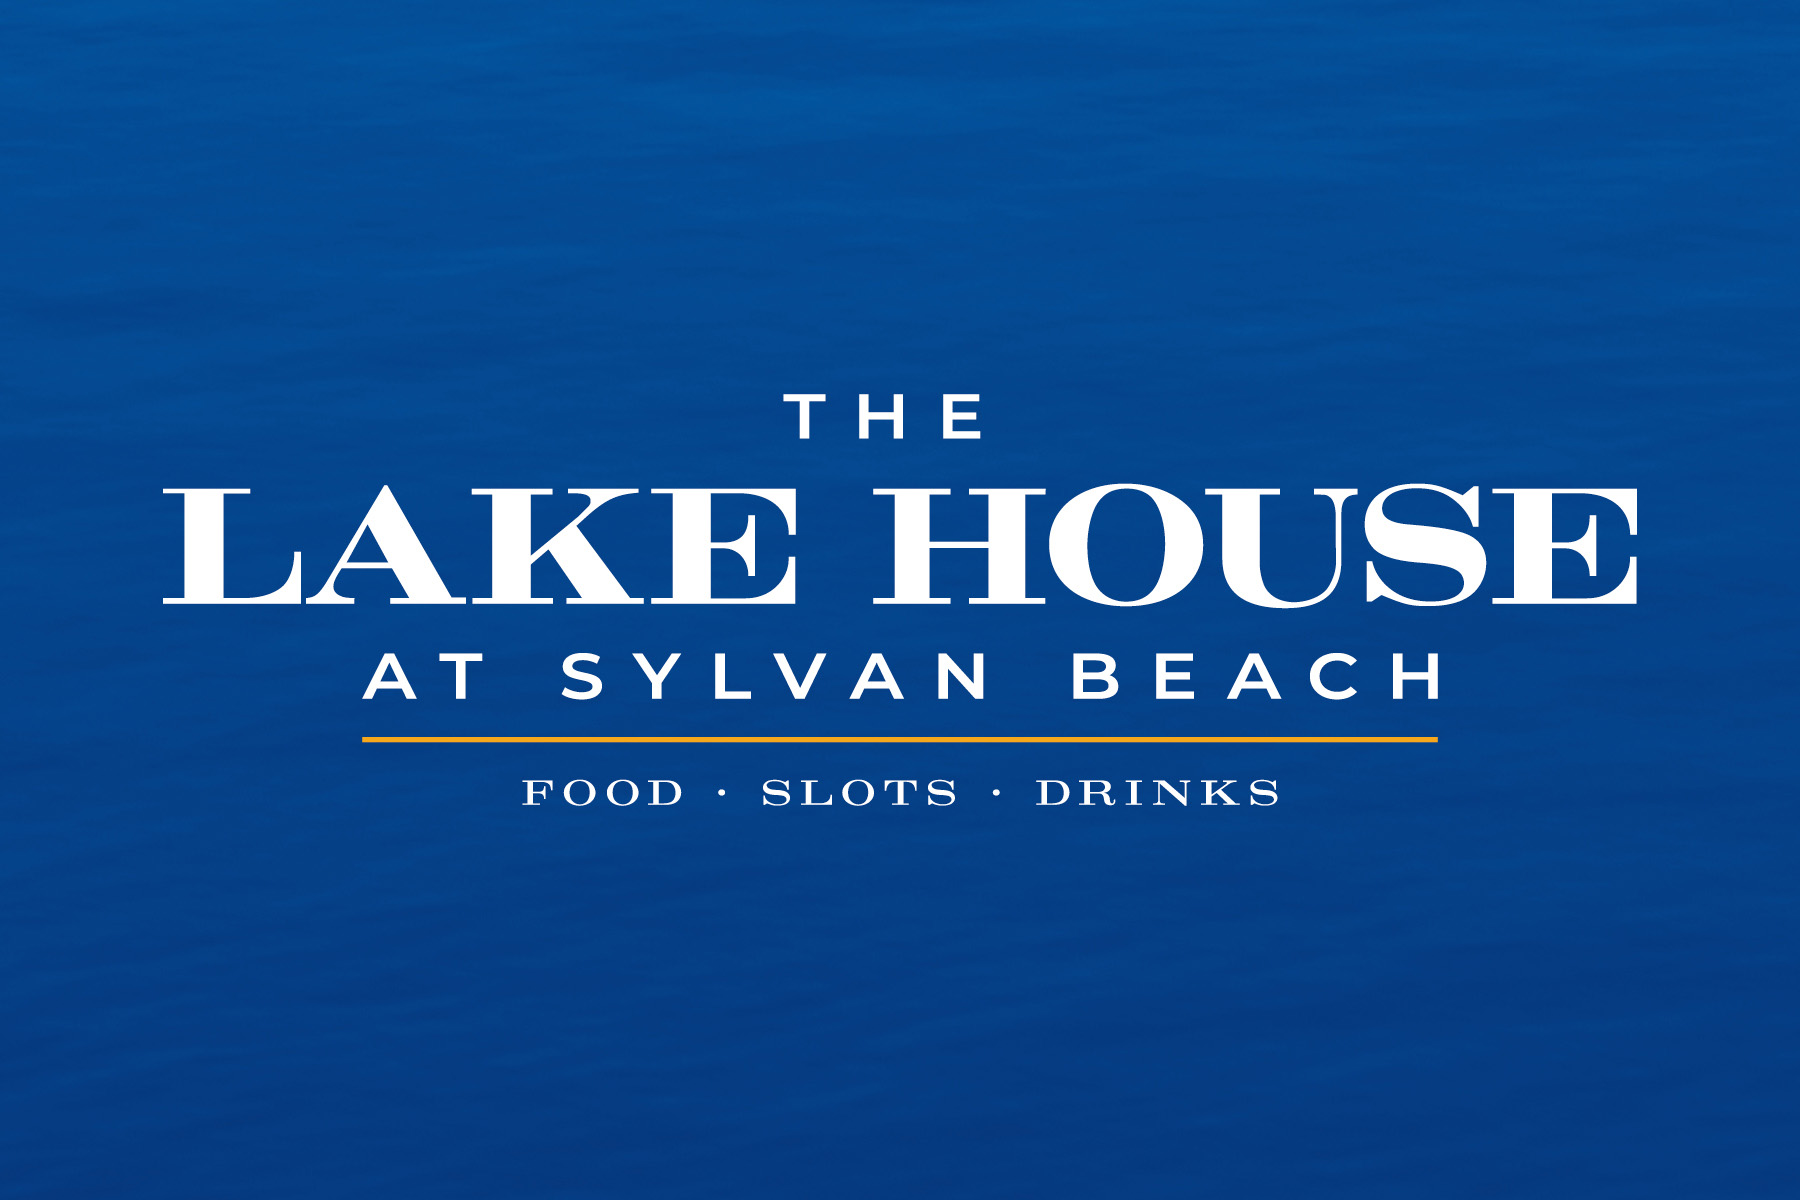 lakehouse logo